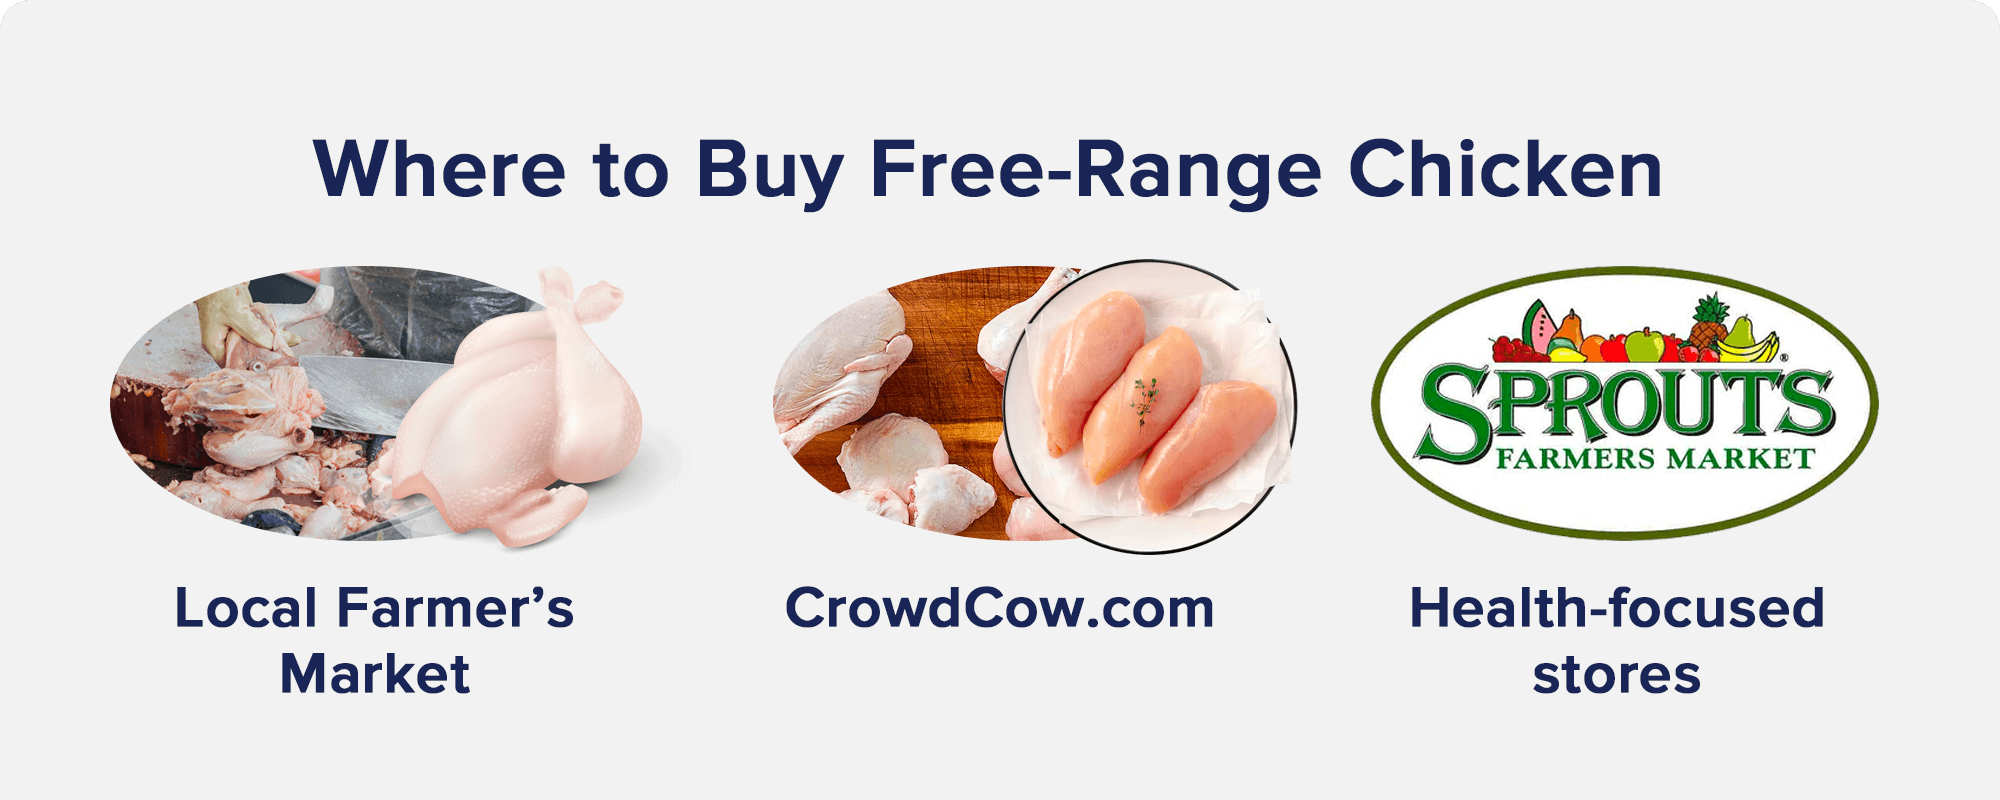 Where to Buy Free-Range Chicken